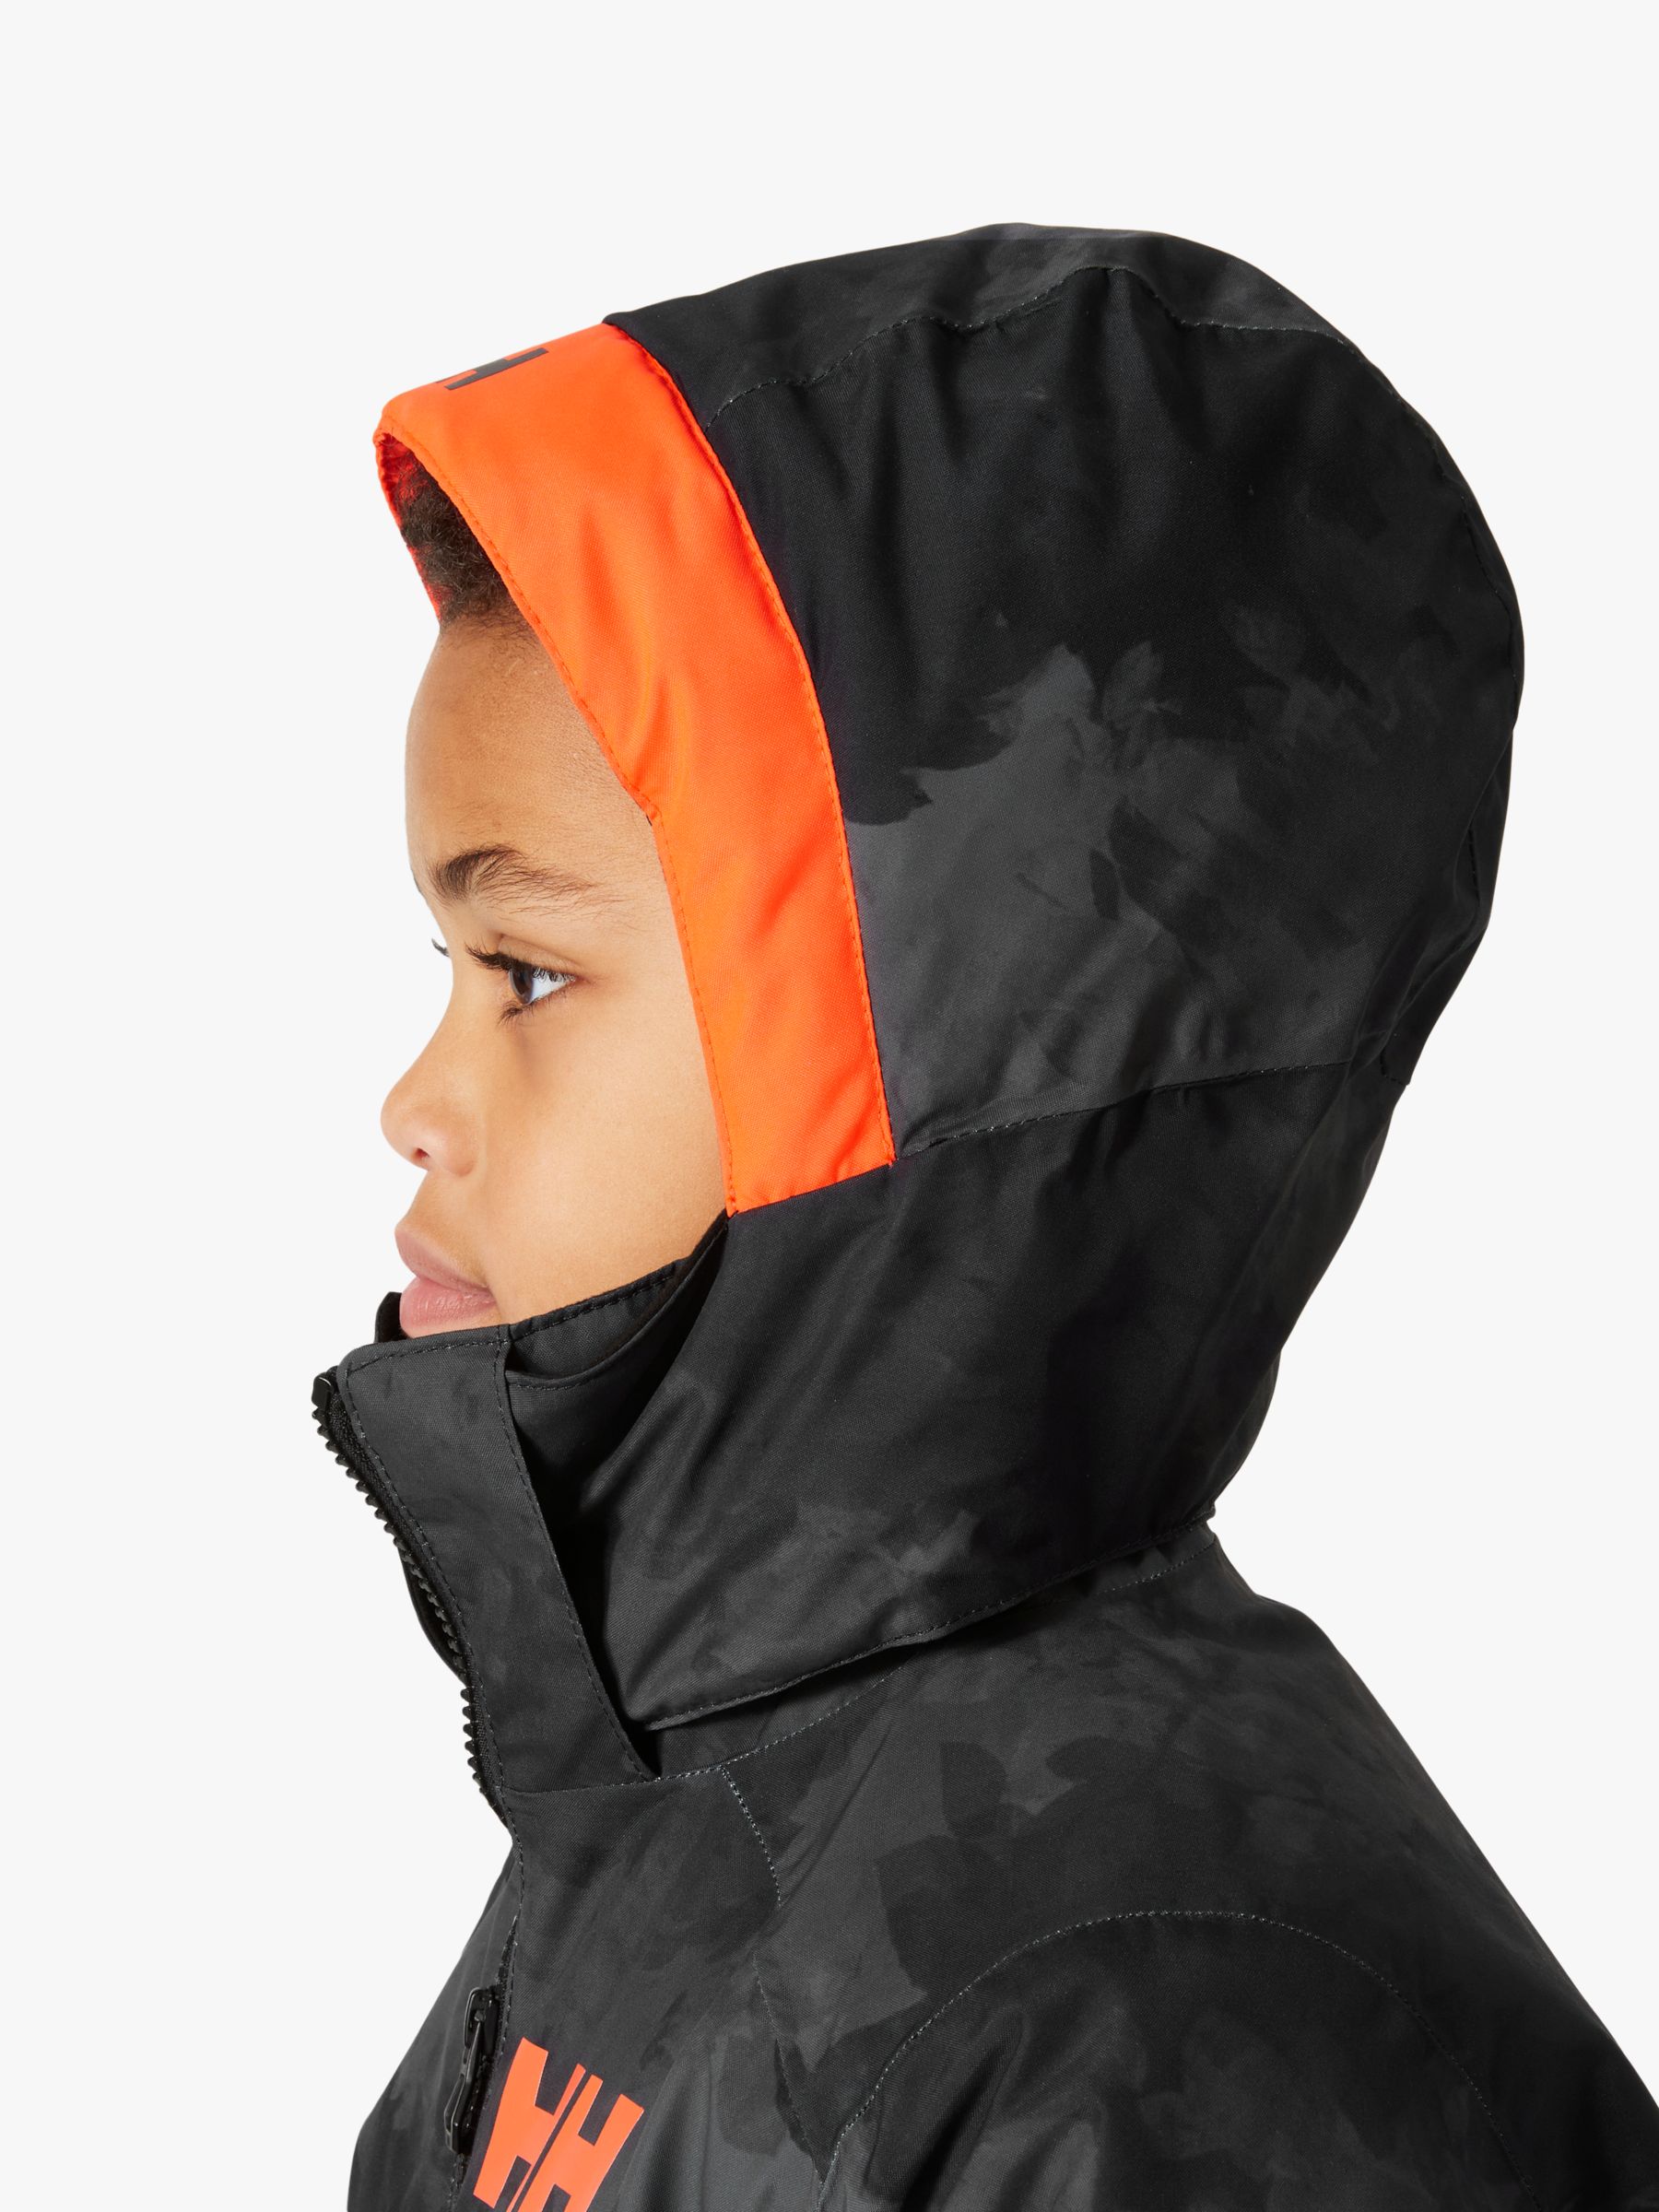 Buy Helly Hansen Kids' Stellar Quest Waterproof Hooded Ski Jacket, Black Online at johnlewis.com